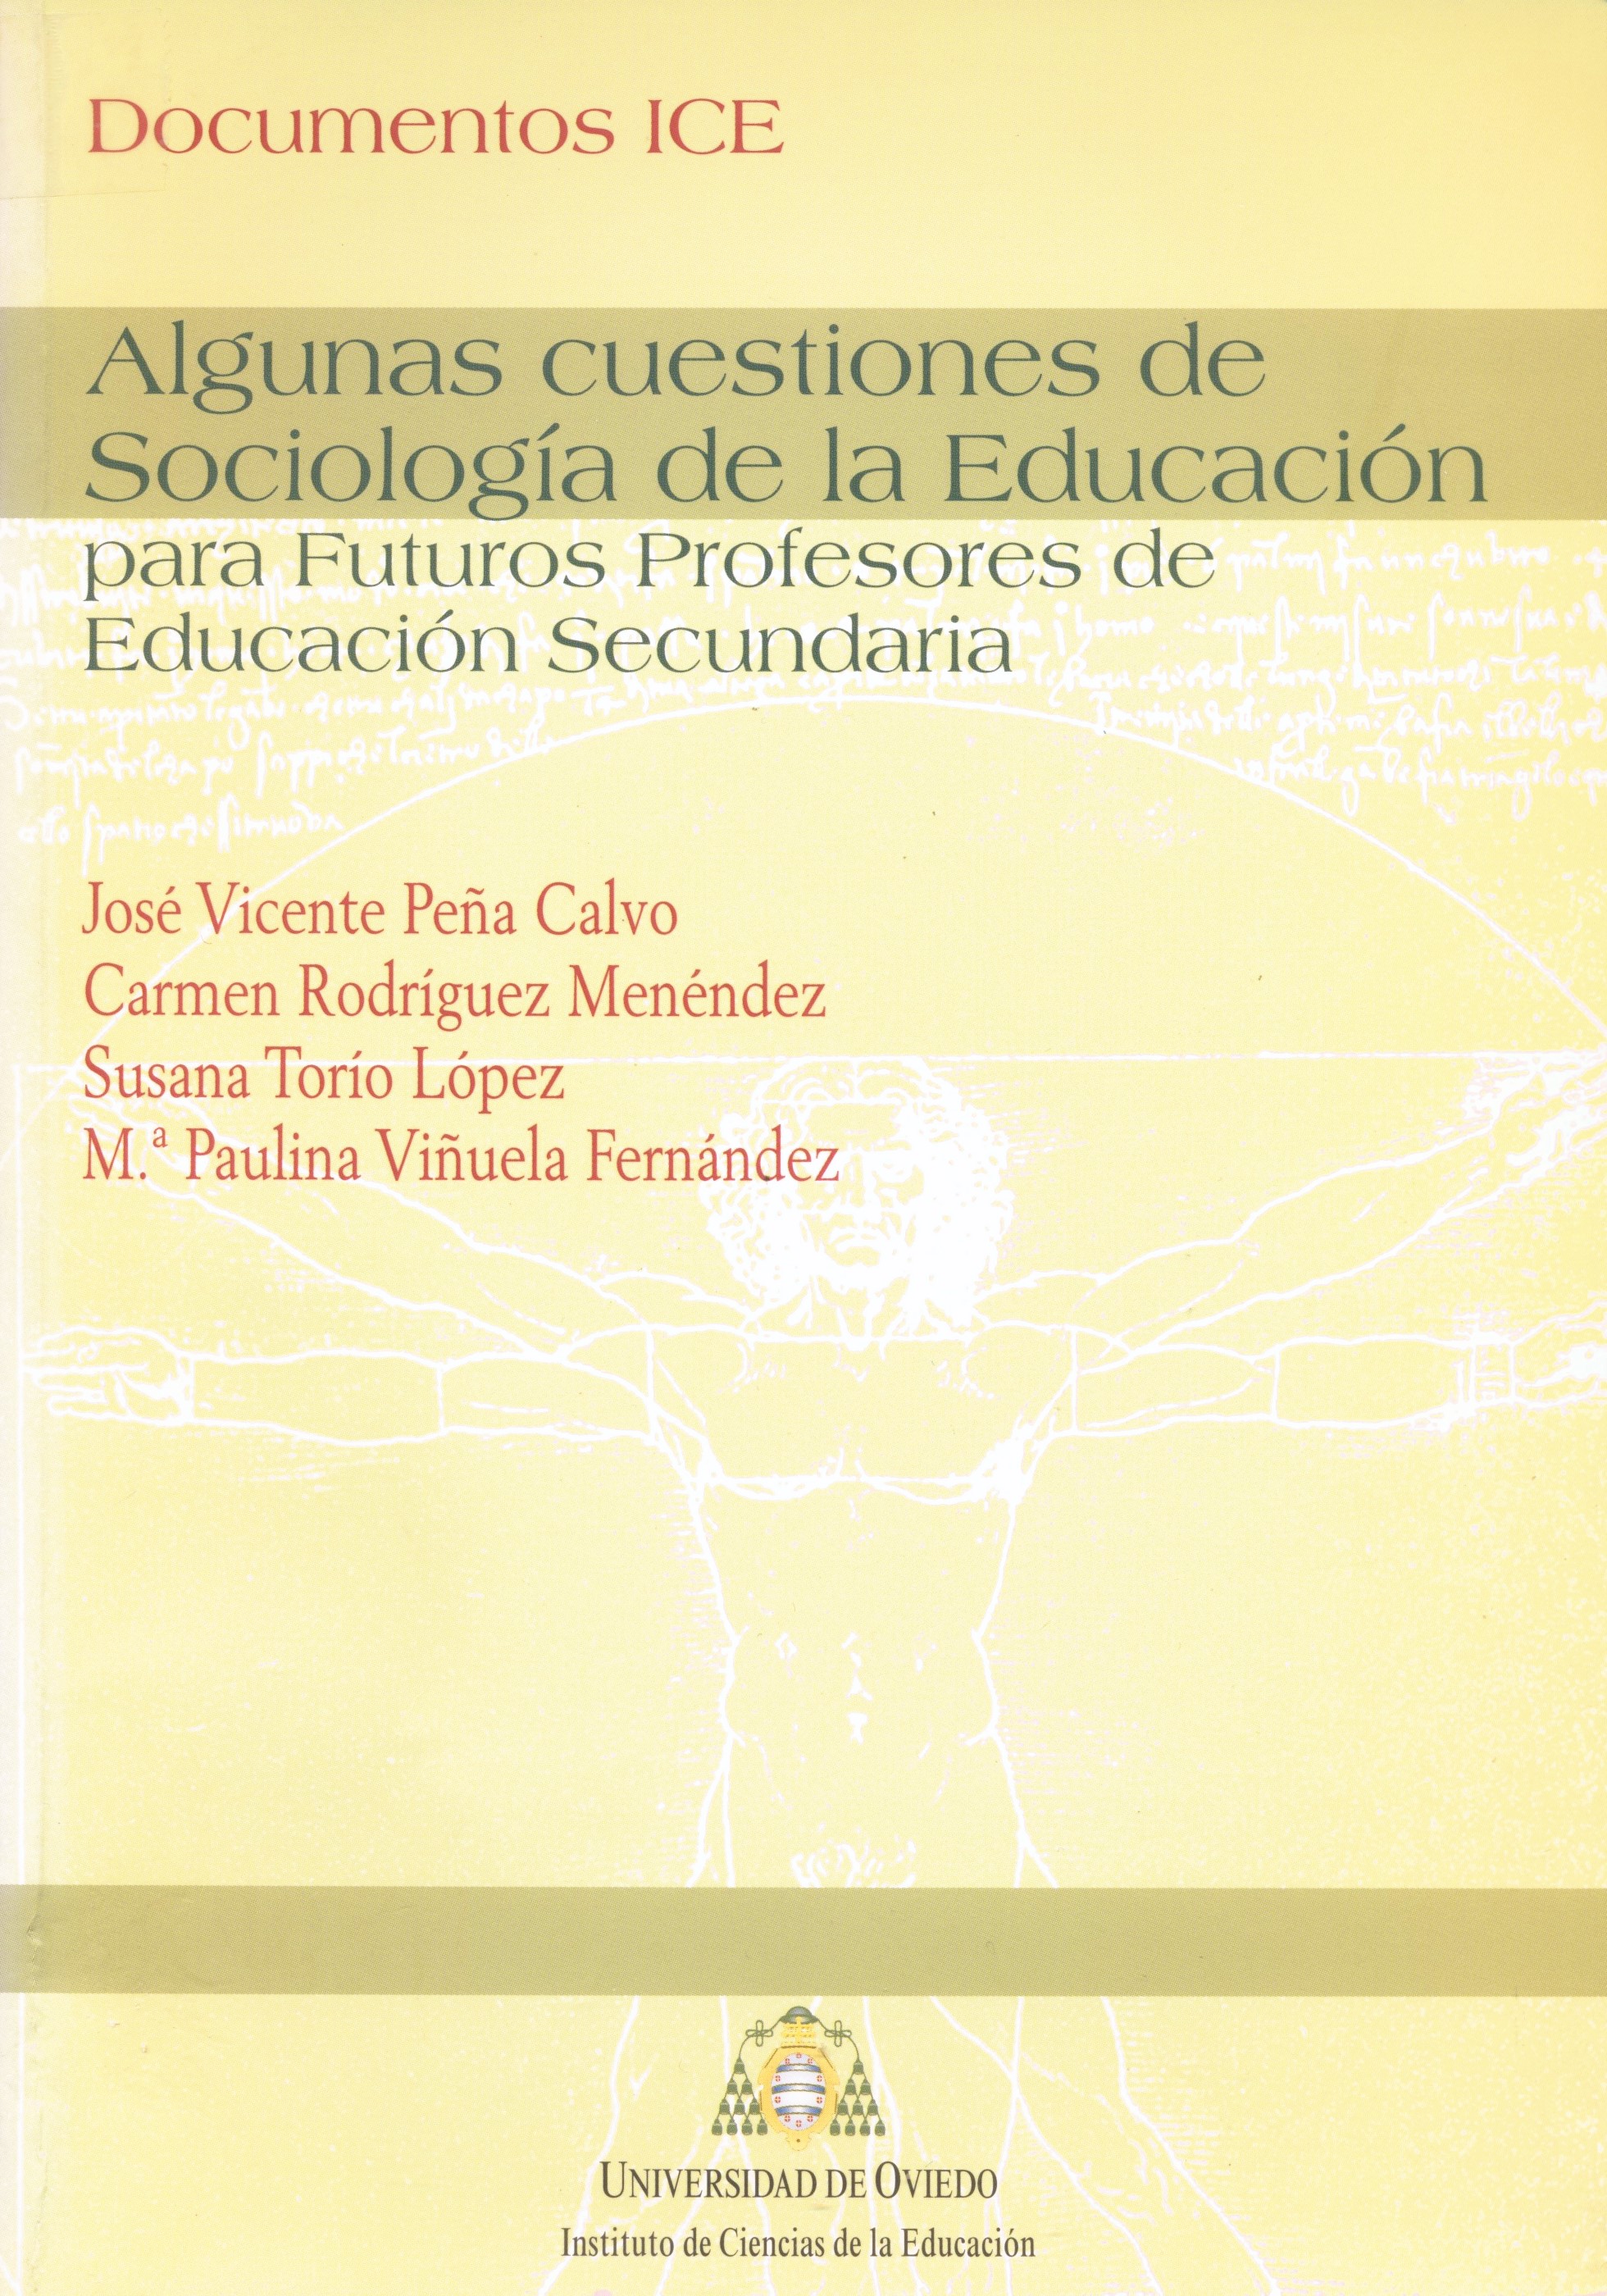 Imagen de portada del libro Algunas cuestiones de Sociología de la Educación para futuros profesores de Educación Secundaria